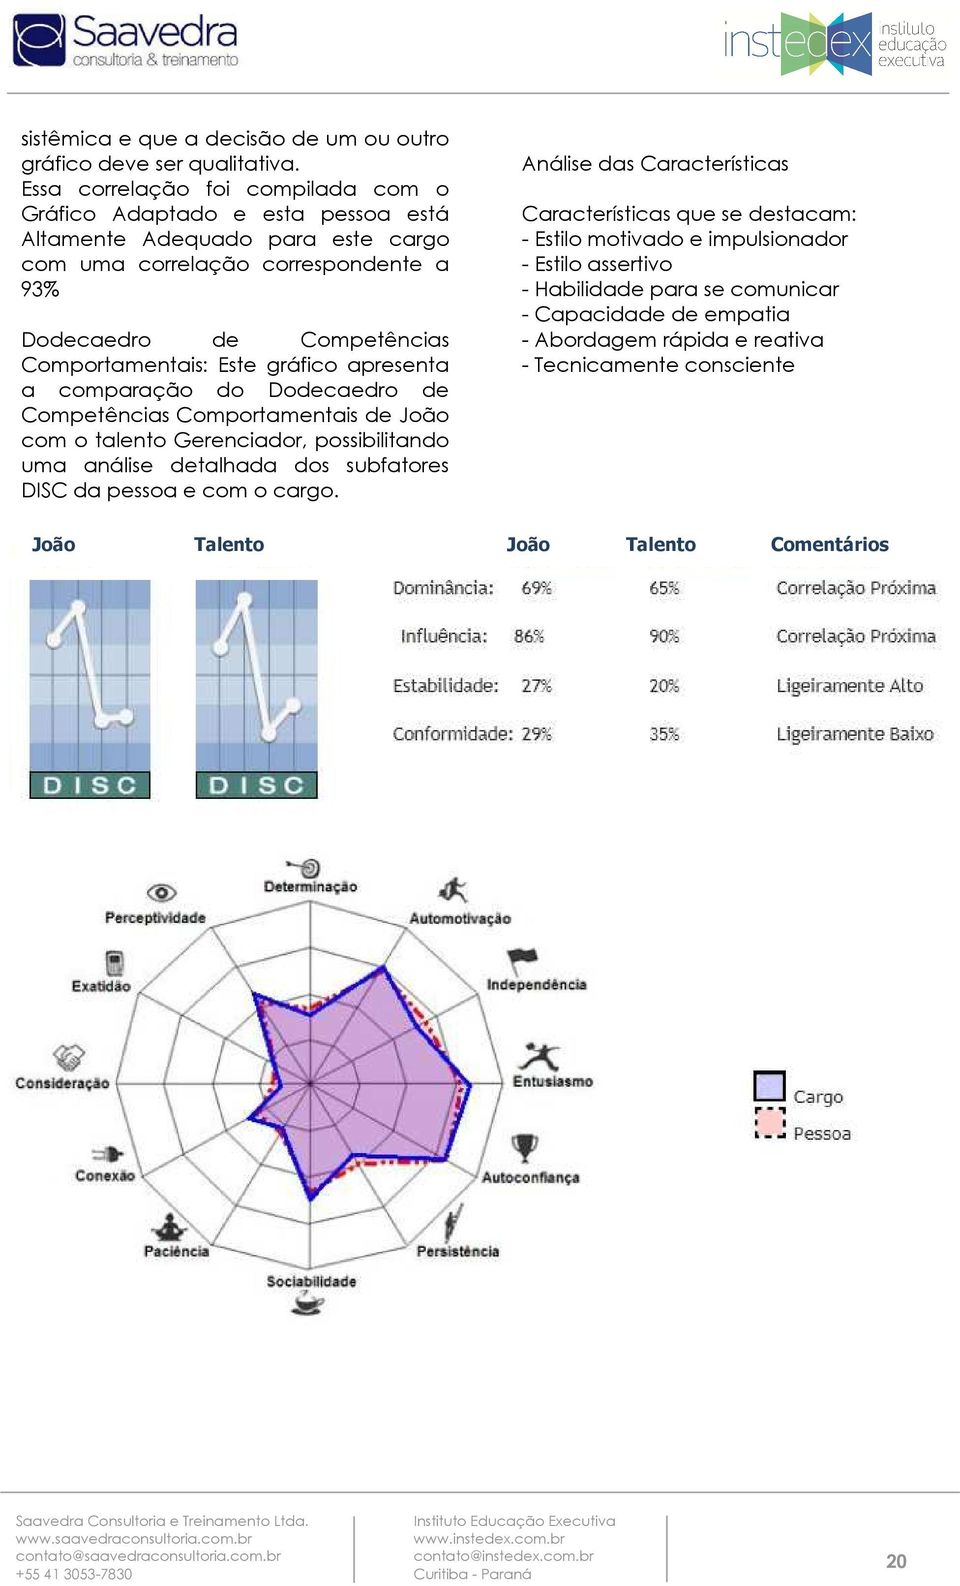 Comportamentais: Este gráfico apresenta a comparação do Dodecaedro de Competências Comportamentais de João com o talento Gerenciador, possibilitando uma análise detalhada dos